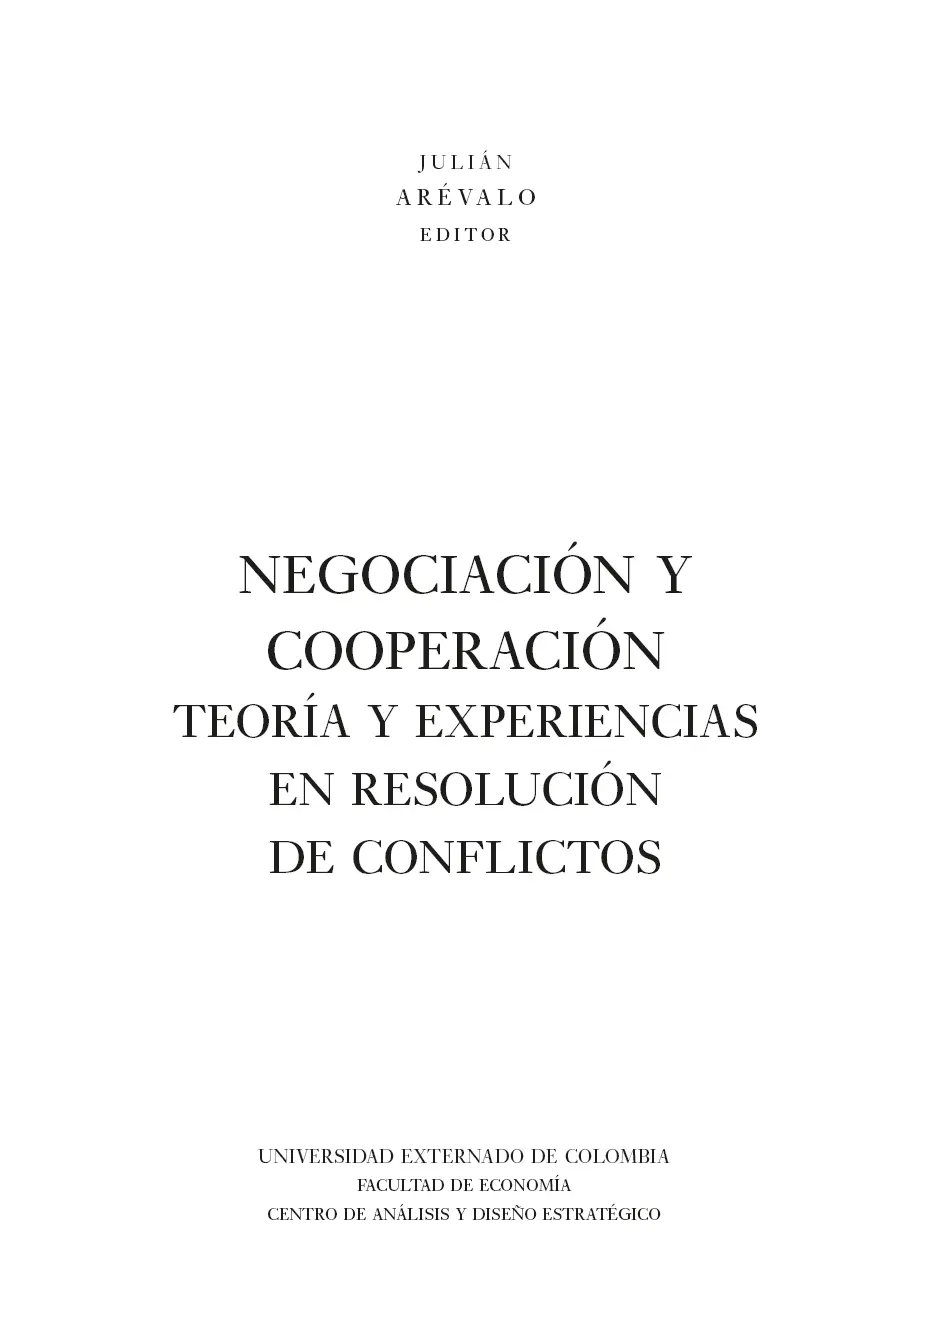 Negociación y cooperación teoría y experiencias en resolución de conflictos - фото 3